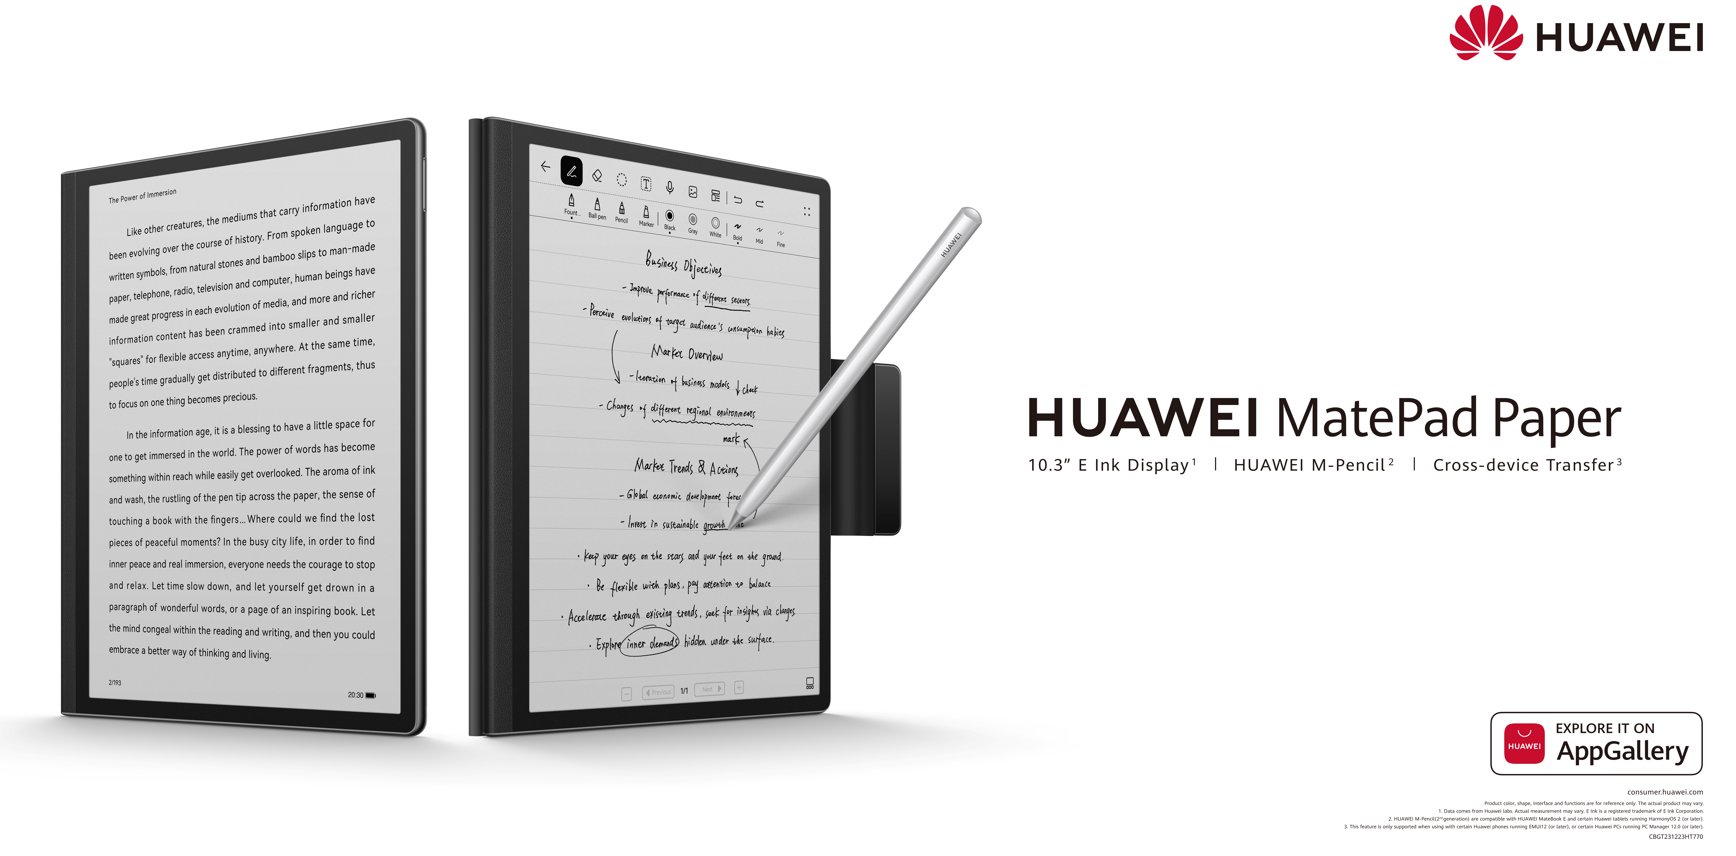 HUAWEI MatePad Paper kini rasmi - tablet E Ink pertama syarikat ini 7